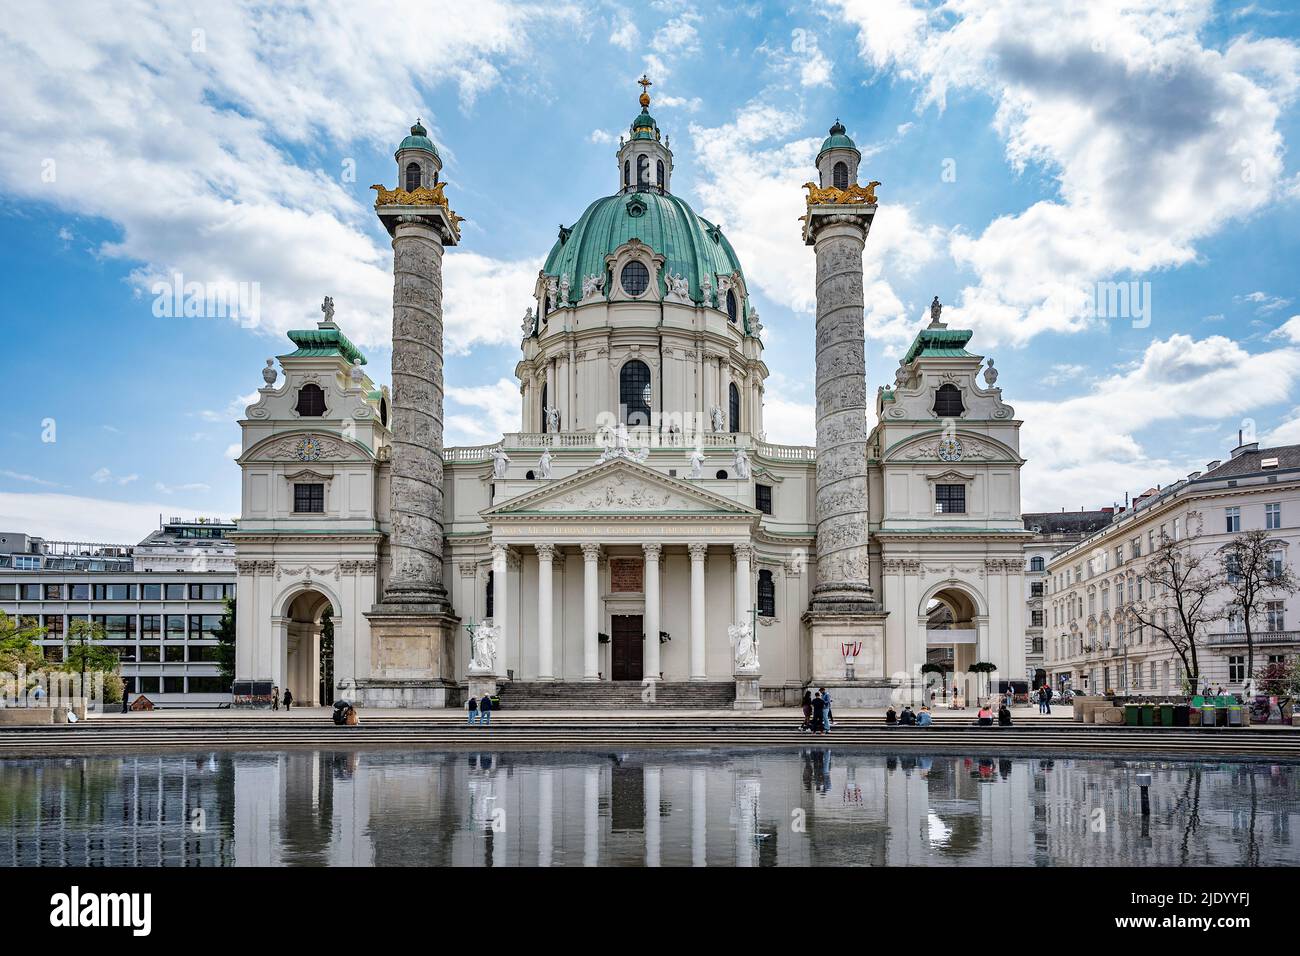 Karlskirche church in Vienna, Austria Stock Photo